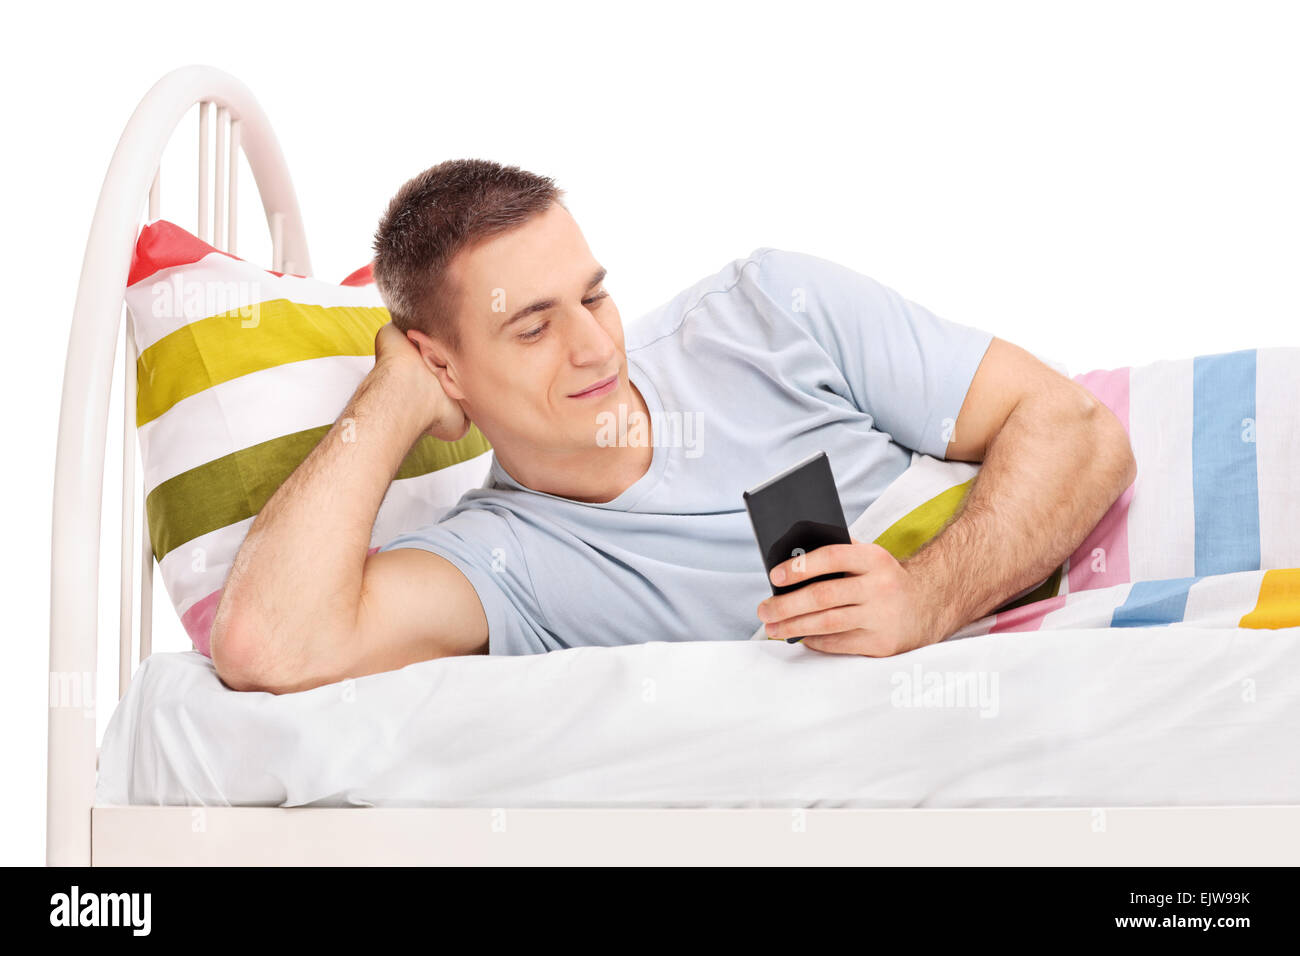 Studioaufnahme von einem entspannten jungen Mann in einem Bett liegen und Surfen im Internet auf seinem Handy isoliert auf weißem Hintergrund Stockfoto